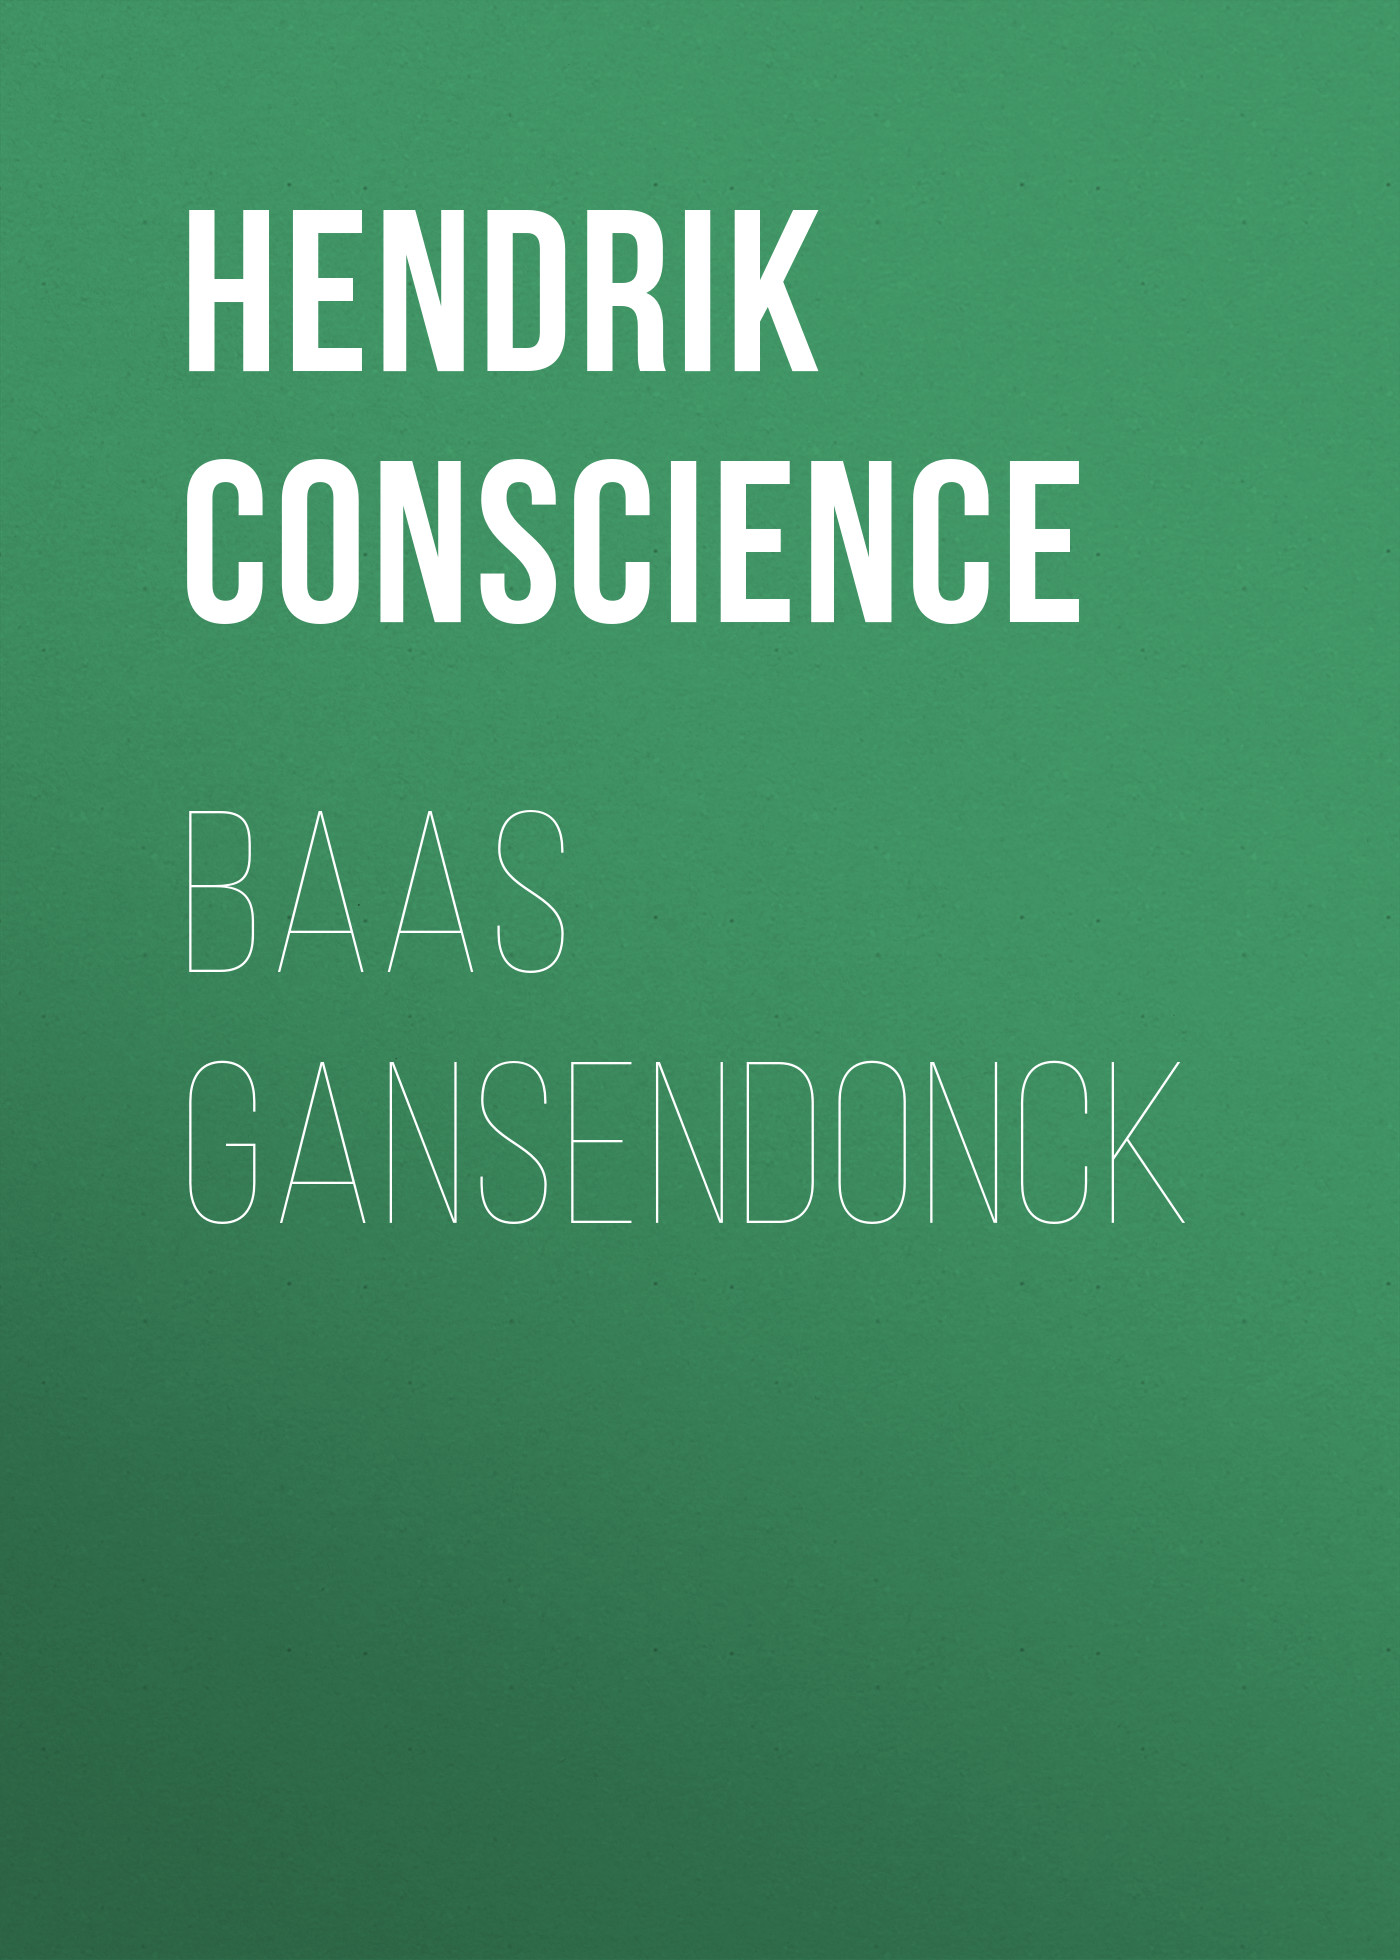 Книга Baas Gansendonck из серии , созданная Hendrik Conscience, может относится к жанру Зарубежная классика. Стоимость электронной книги Baas Gansendonck с идентификатором 48631804 составляет 0 руб.